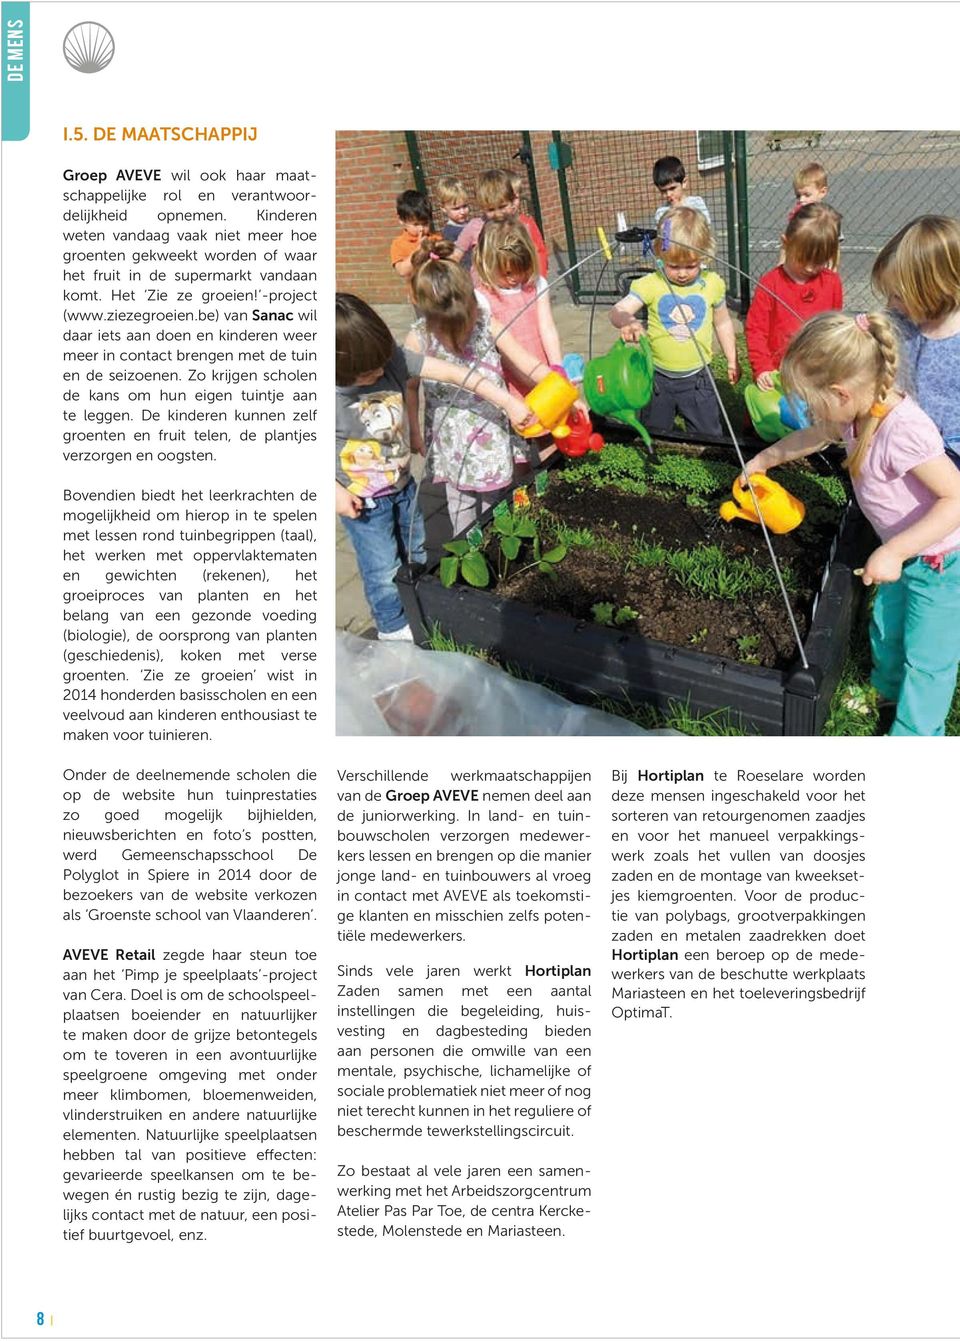 be) van Sanac wil daar iets aan doen en kinderen weer meer in contact brengen met de tuin en de seizoenen. Zo krijgen scholen de kans om hun eigen tuintje aan te leggen.